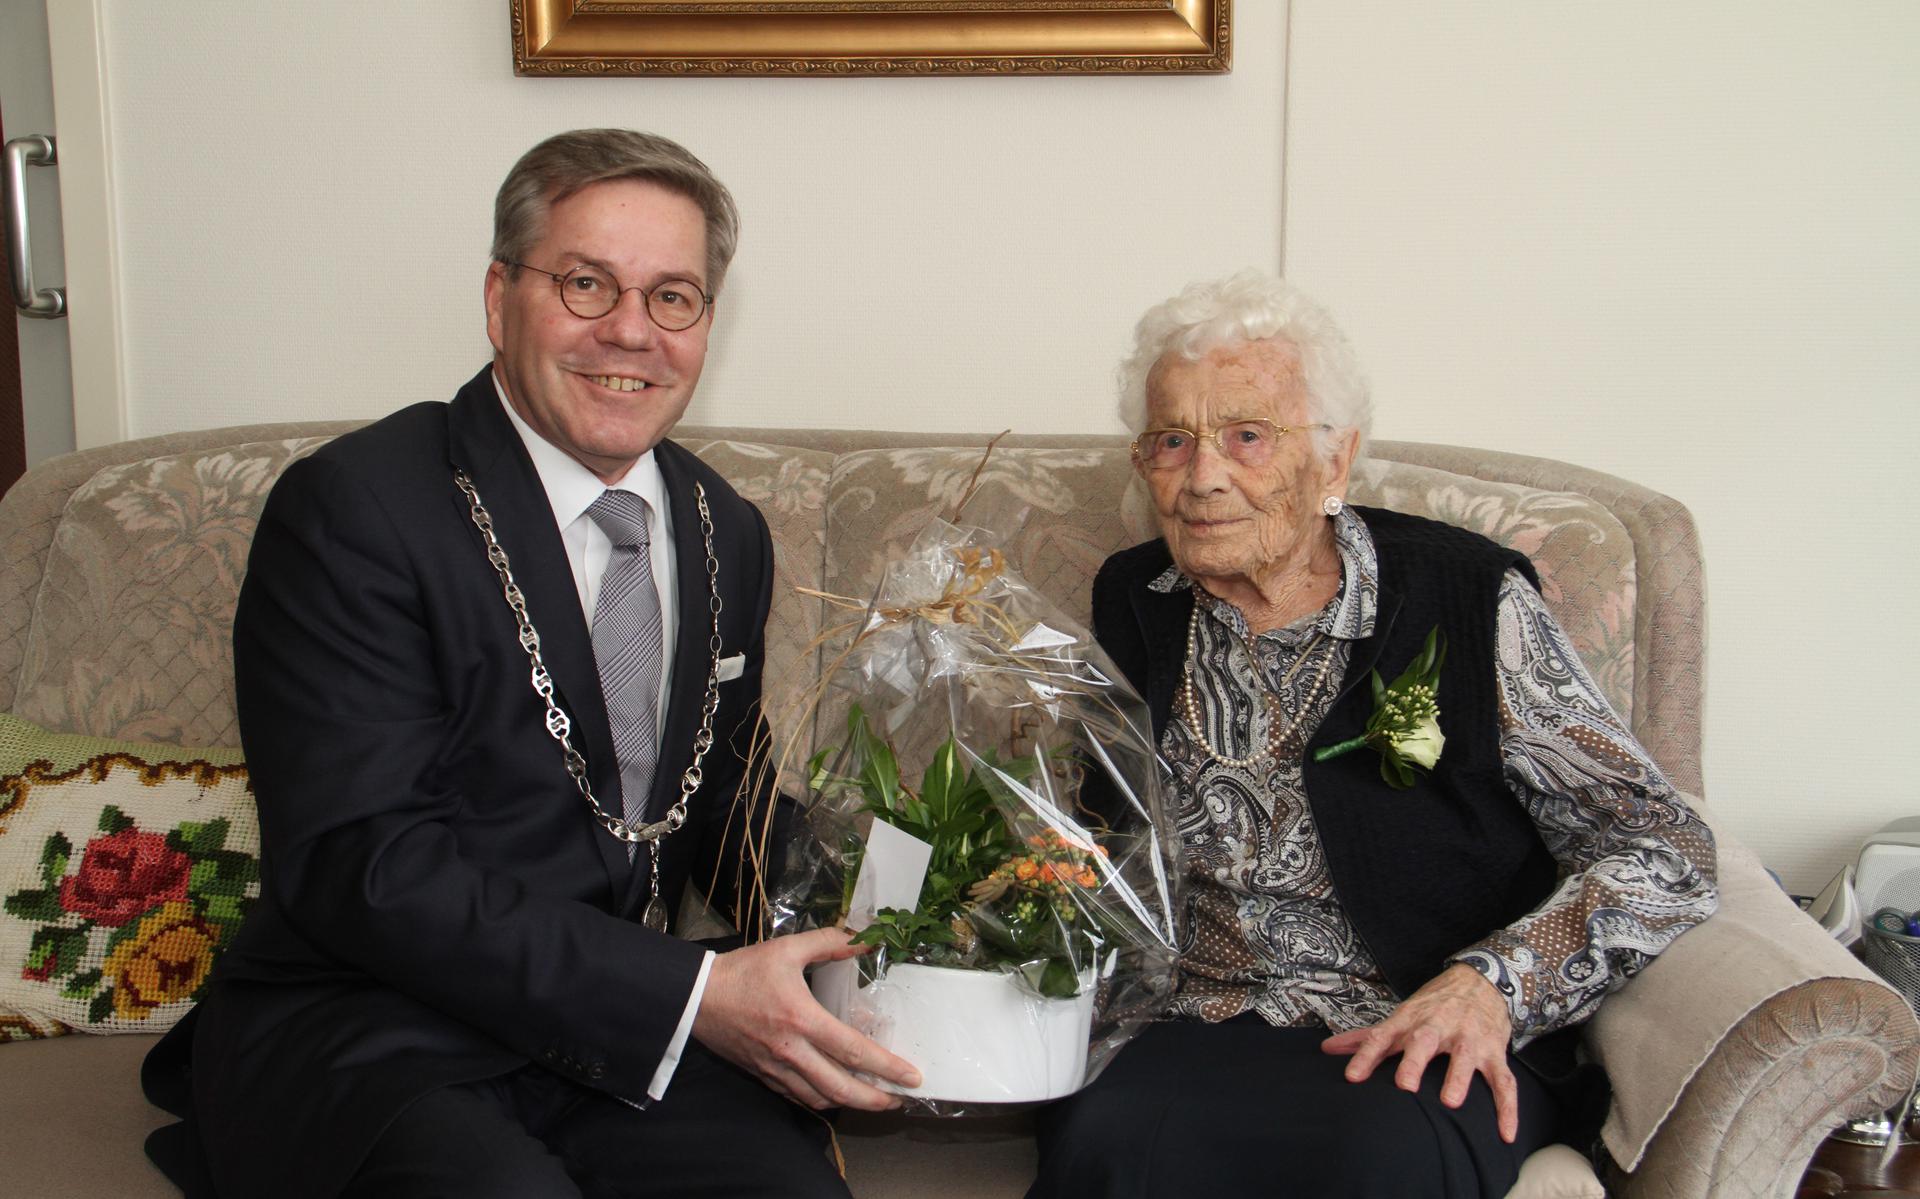 Dinie Siepel-Dodde is met haar 104 de oudste inwoonster van Veendam. Ze kreeg namens de gemeente van burgemeester Link de felicitaties en een bloemstuk.